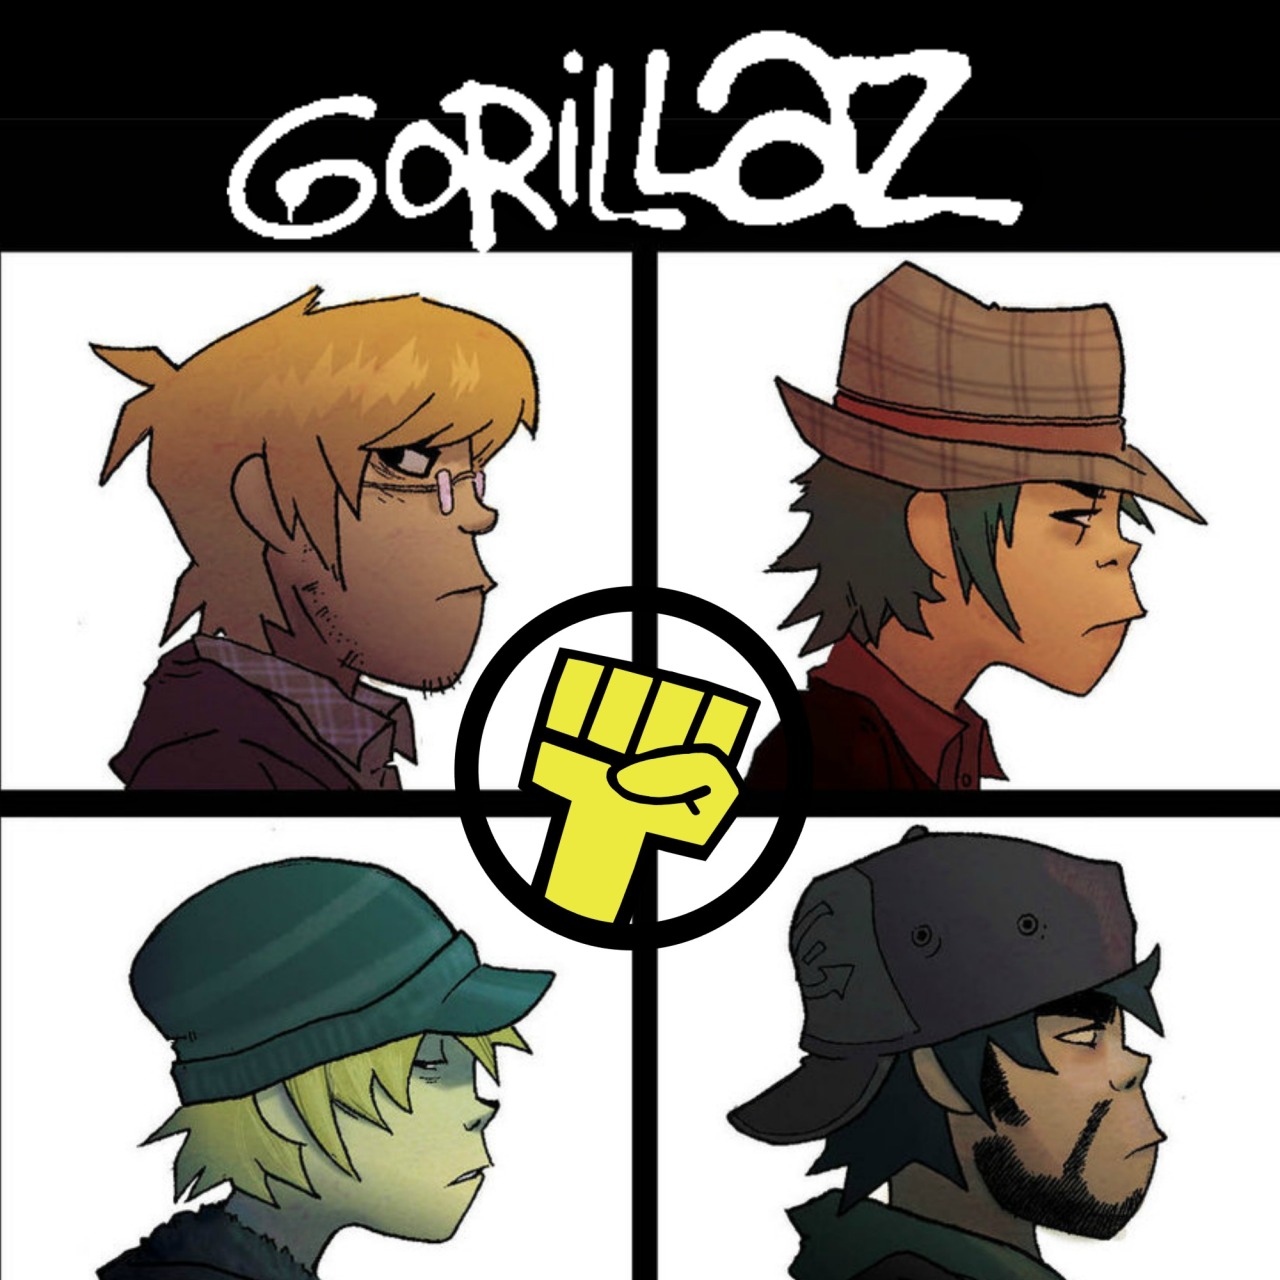 Gorillaz profile pic